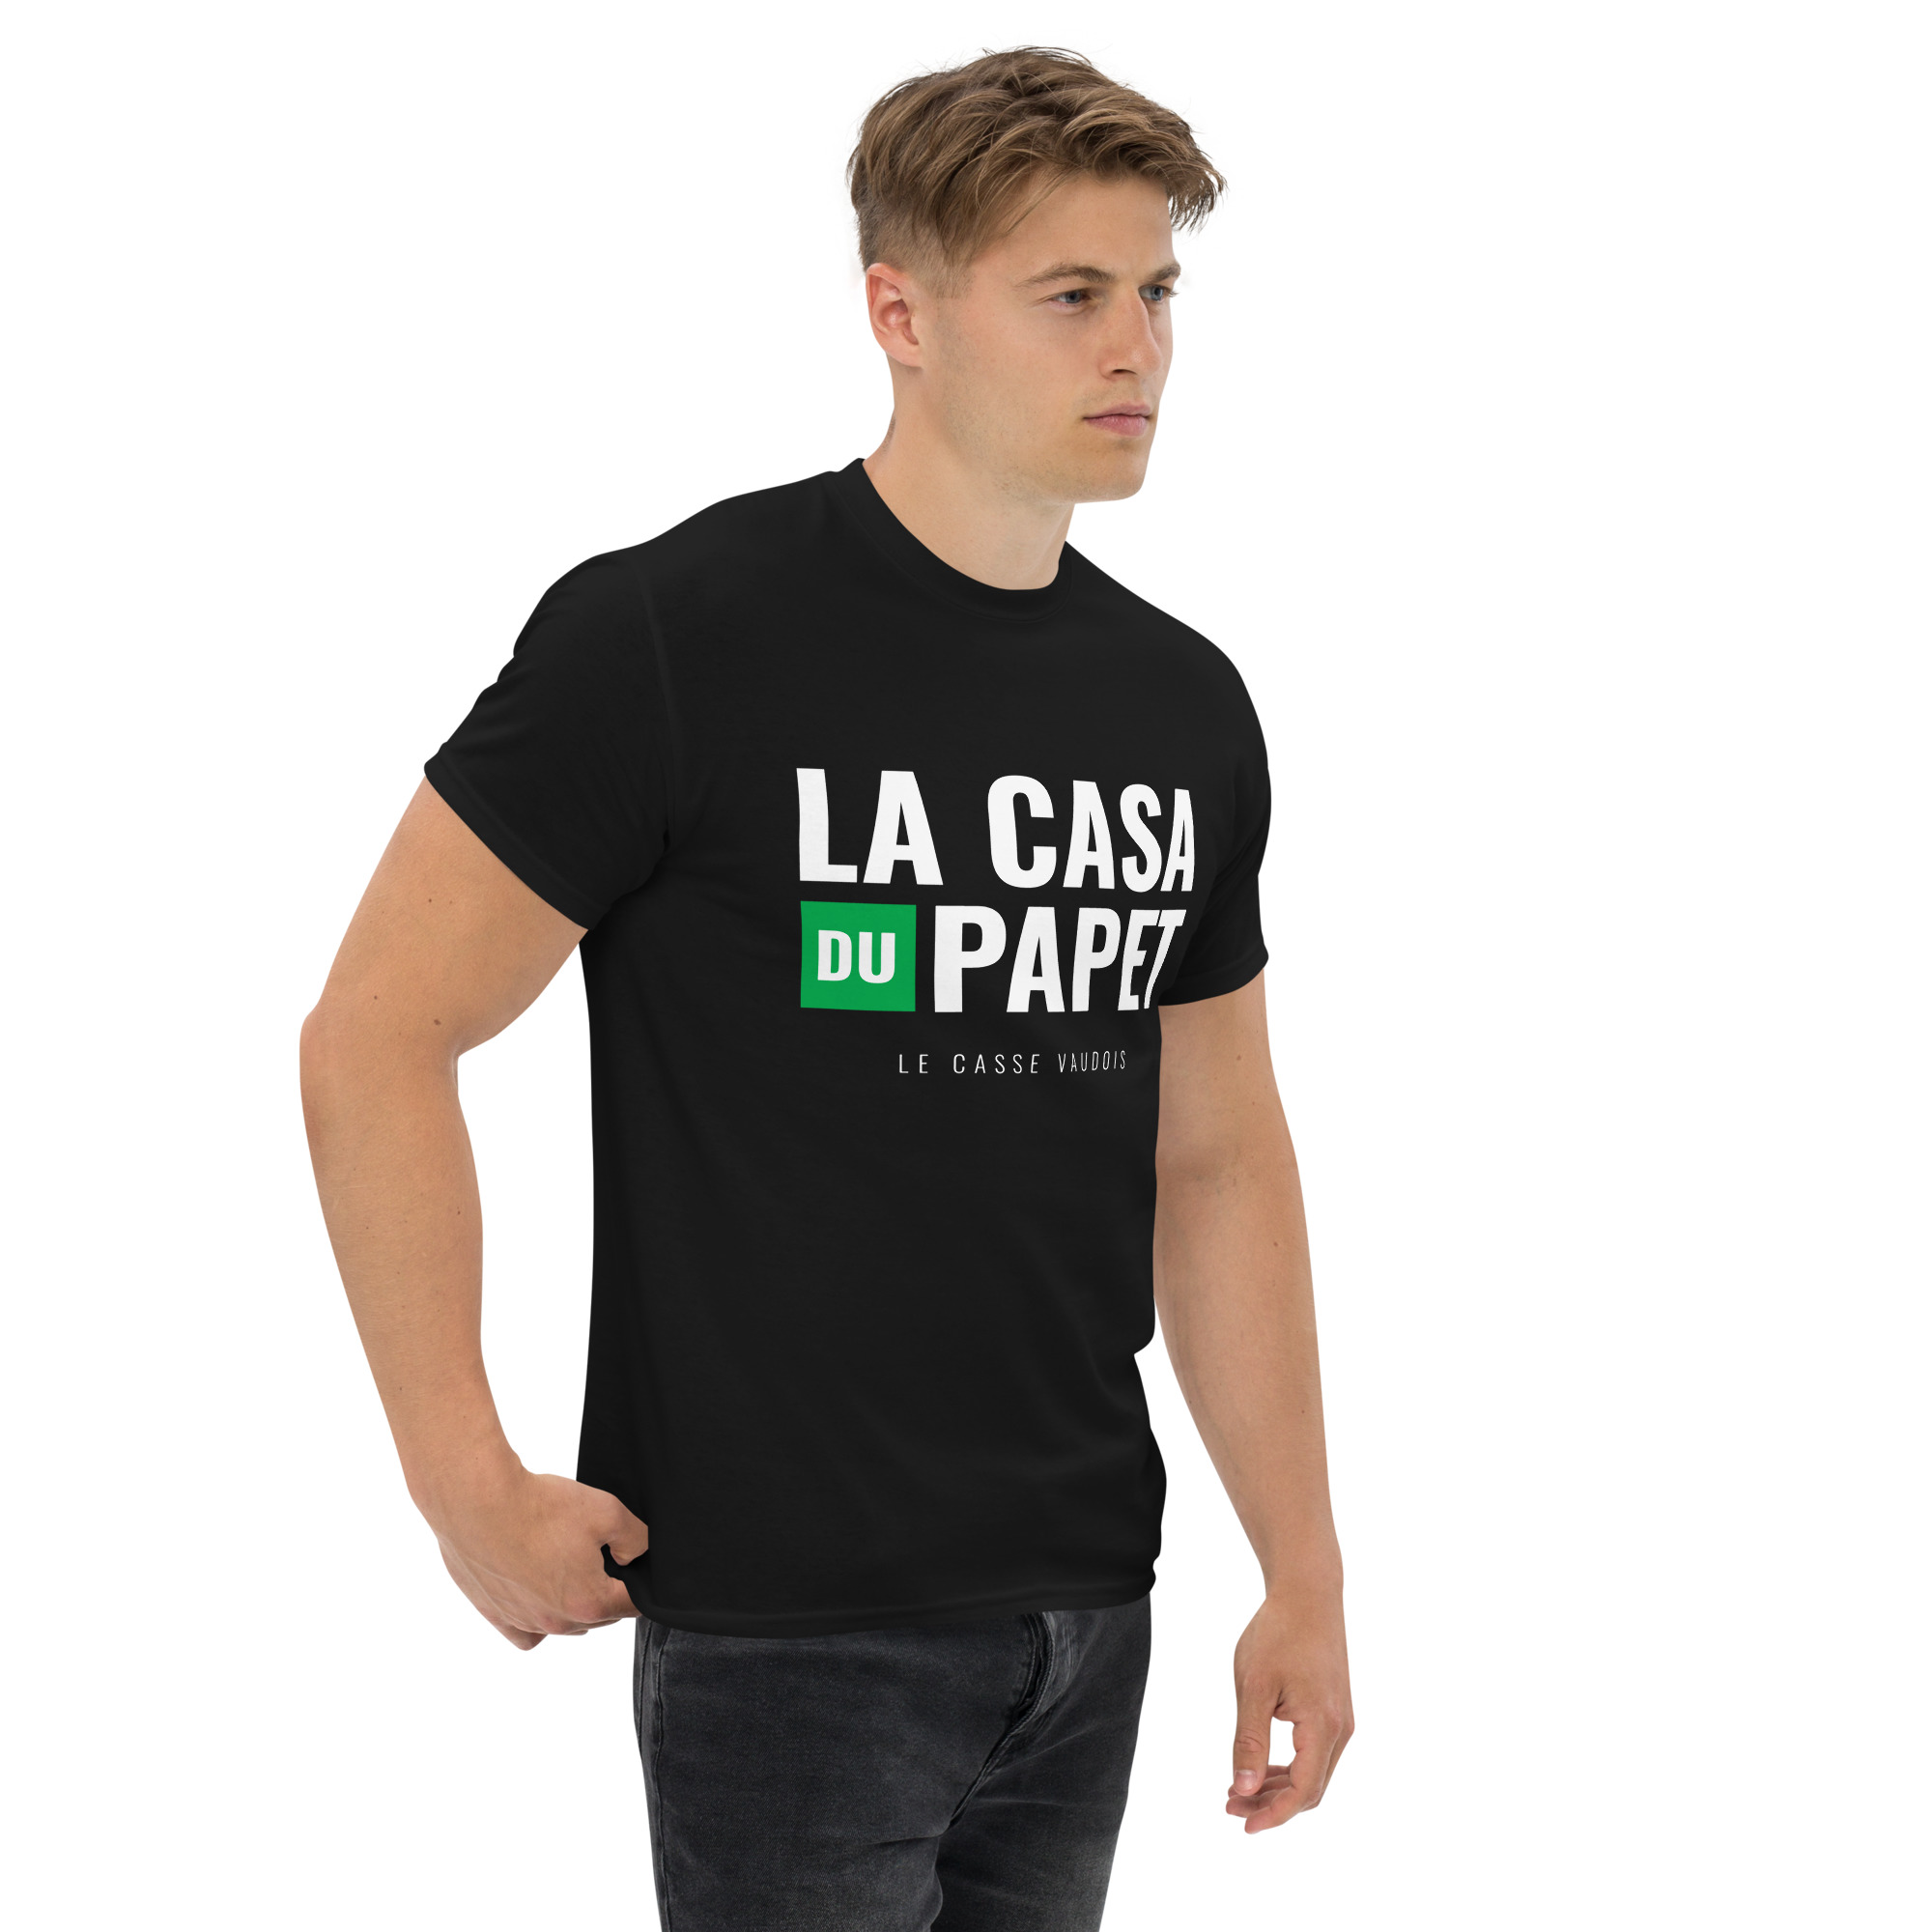 T-shirt – Les Vaudois – La Casa du Papet T-Shirts Wearyt